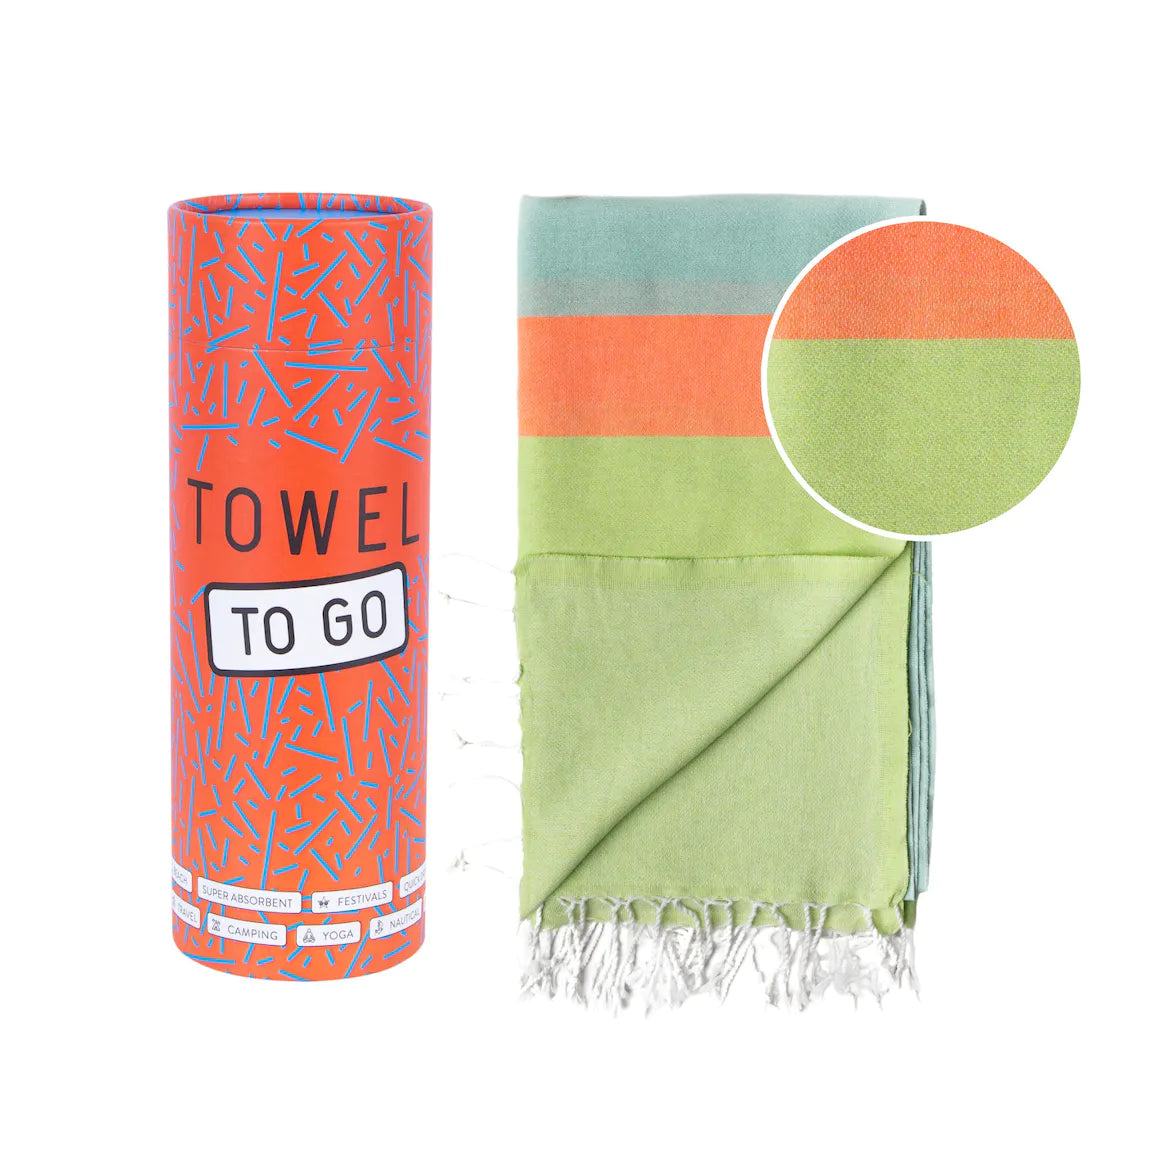 TOWEL TO GO Neon grün & blau | handgefertigtes Hammamtuch / Baumwolltuch / Baumwolldecke | Reisehandtuch | extra saugstark | 100% reine Baumwolle | vegan